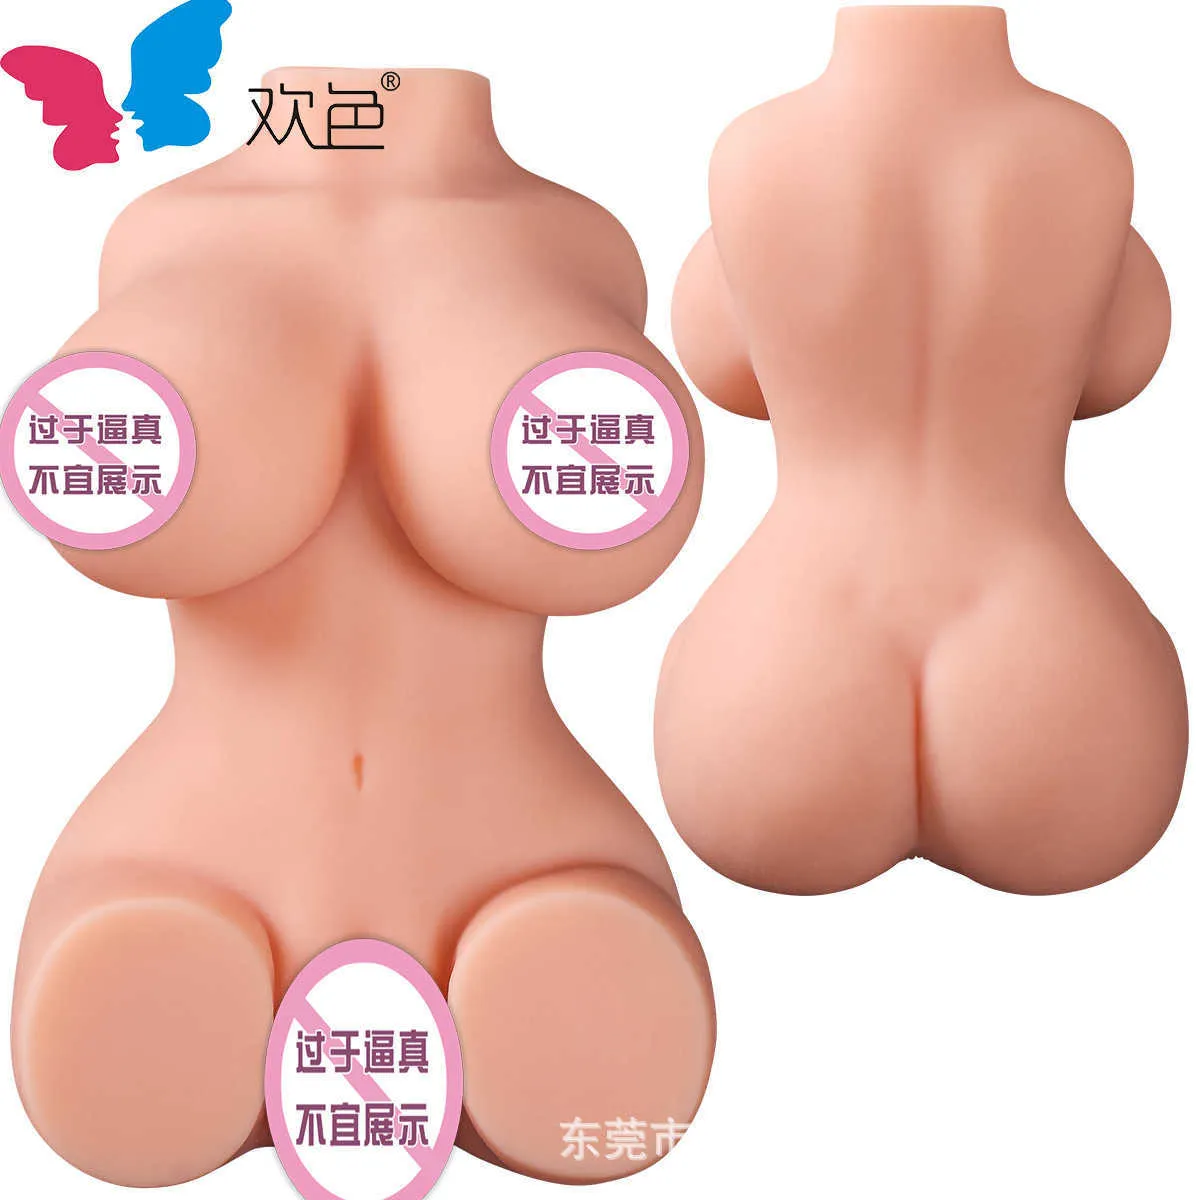 Eine Halbkörper-Silikonpuppe von Huanse, neue feste Silikon-Umgekehrte Puppe mit Körpernamen, Ausrüstung, Flugzeugbecher, Sexualitätsprodukte für Erwachsene, EPQ6